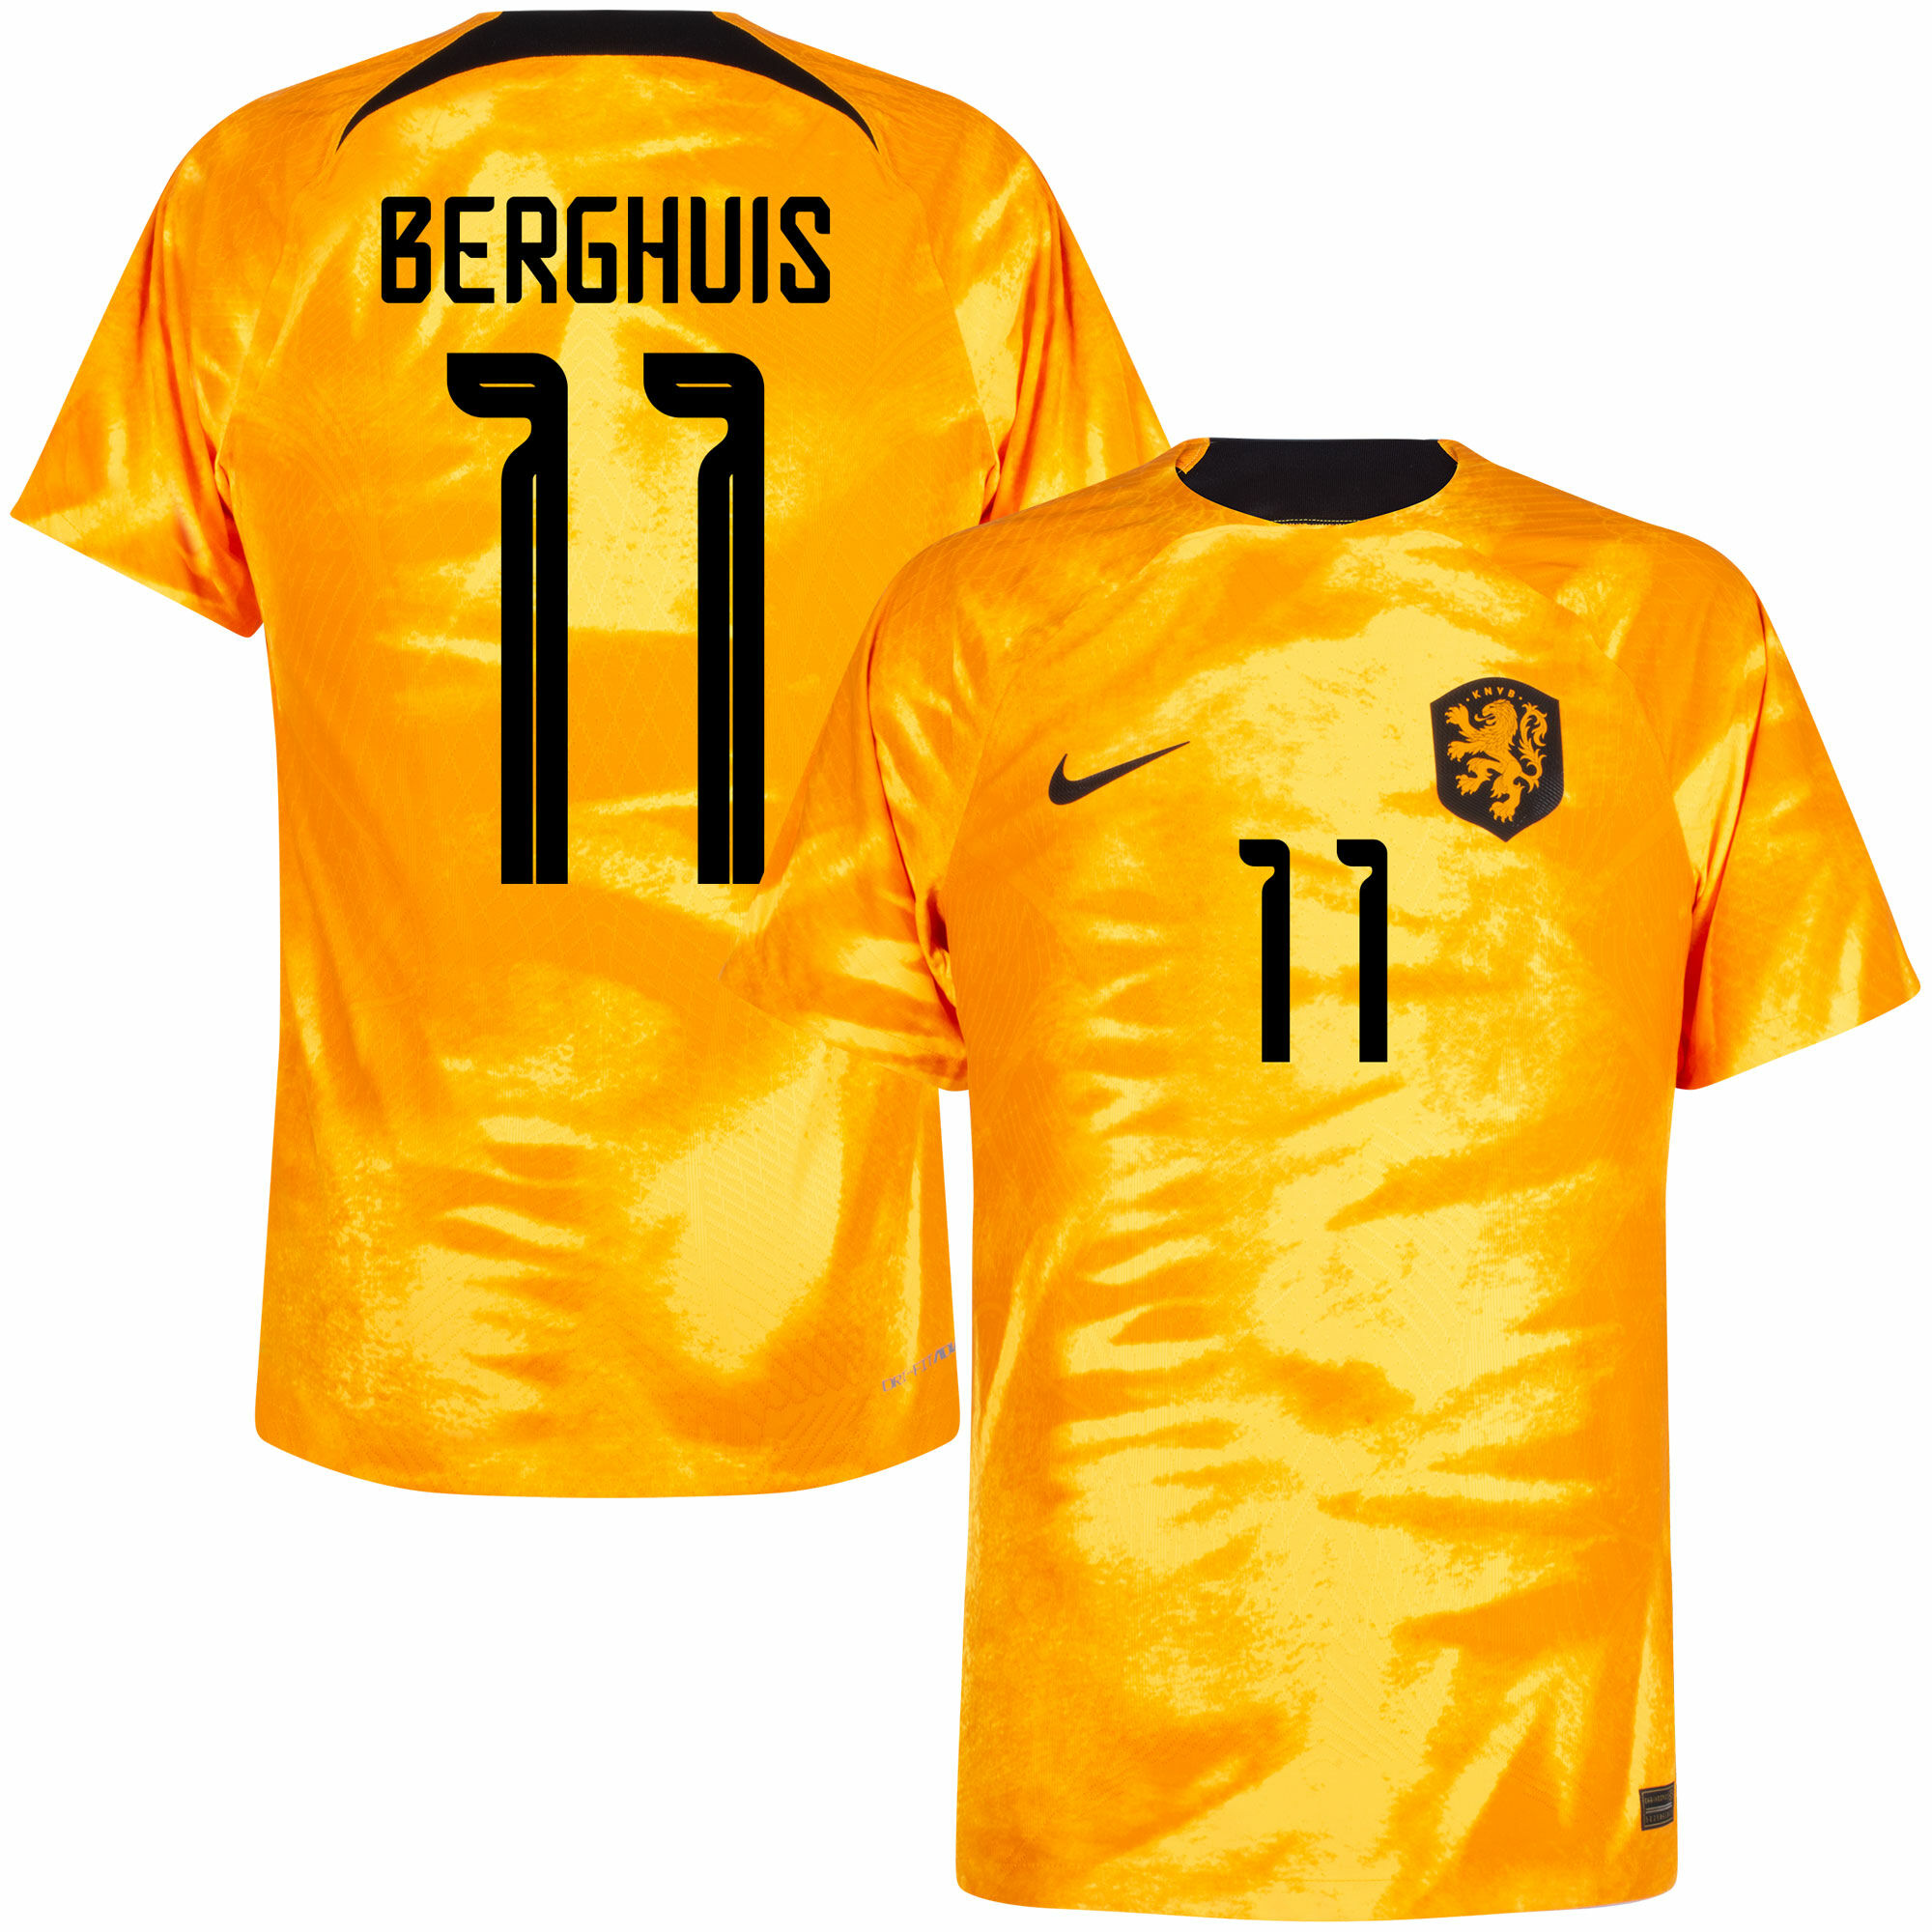 Nizozemí - Dres fotbalový "Match" - Steven Berghuis, oranžový, oficiální potisk, číslo 11, domácí, sezóna 2022/23, Dri-FIT ADV